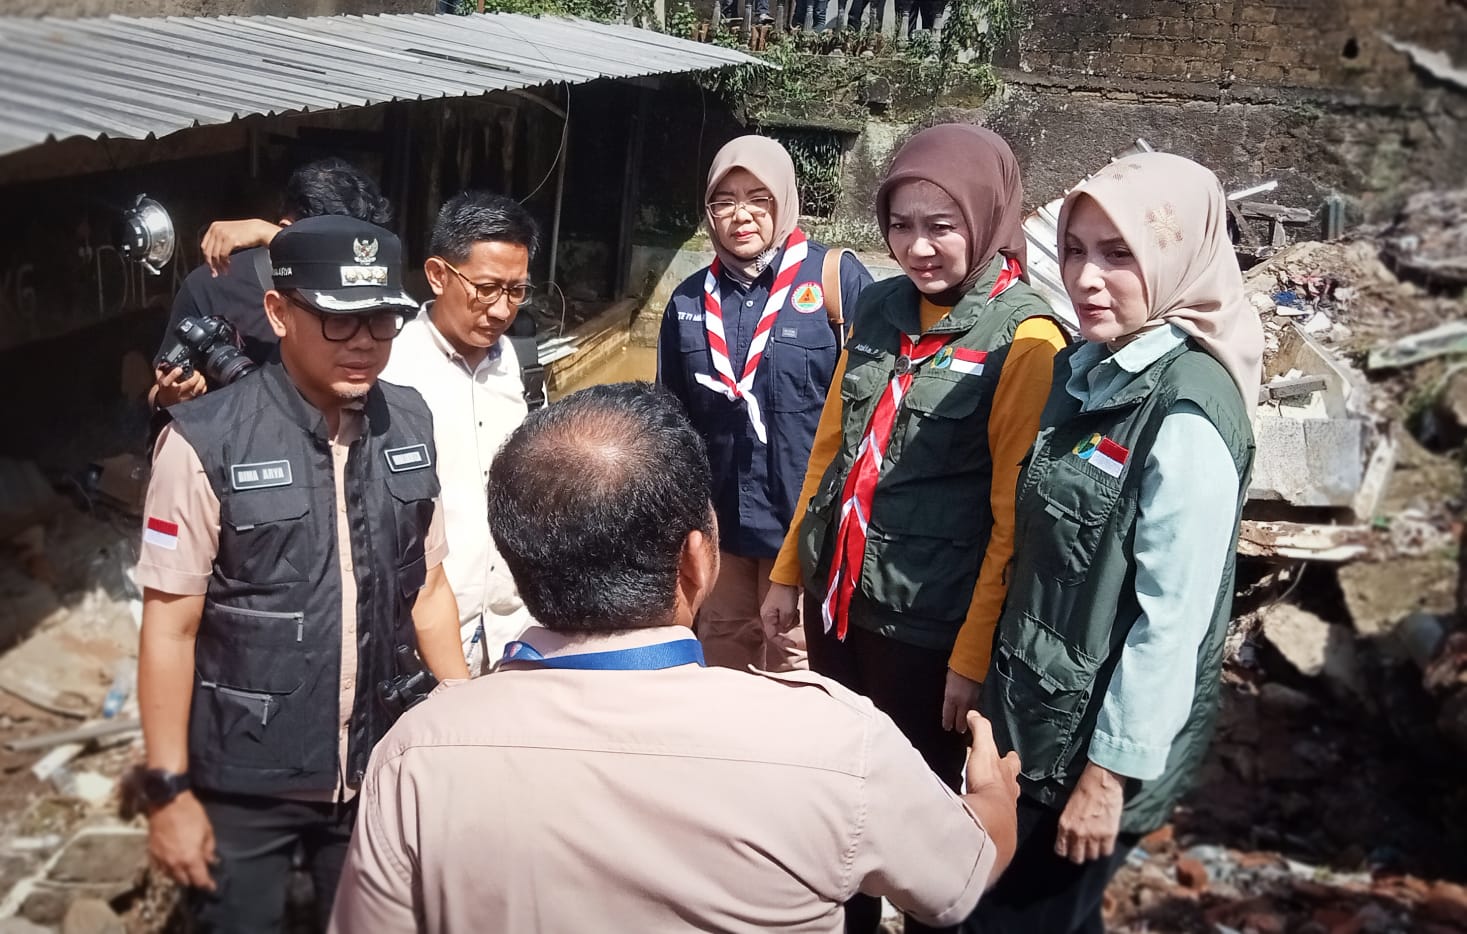 Tinjau Lokasi Longsor di Bogor, Atalia Harap Ada Tindakan Preventif